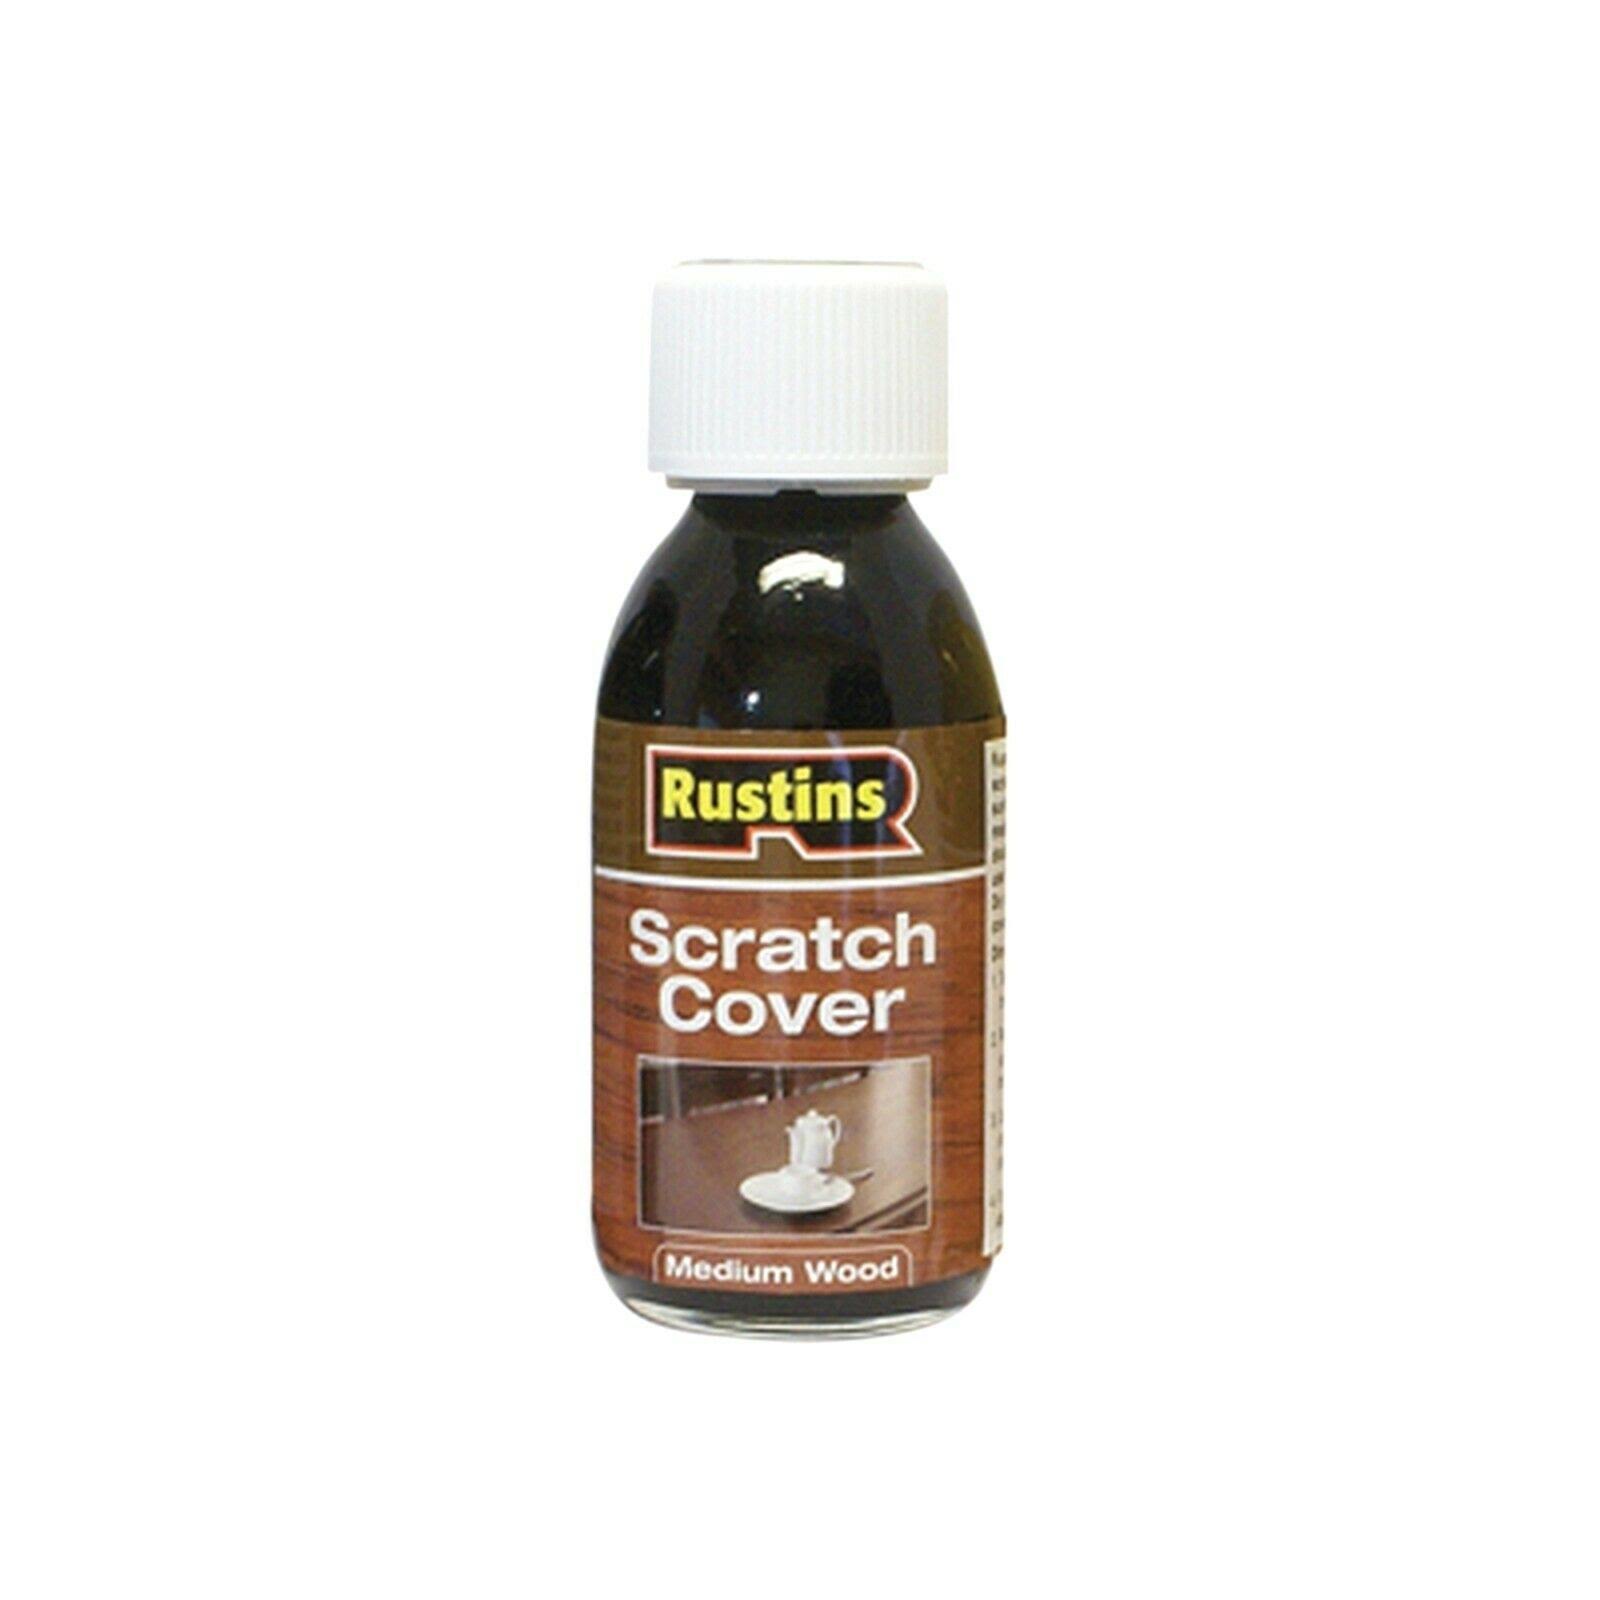 Rustins Scratch Cover - Medium Wood, 125ml